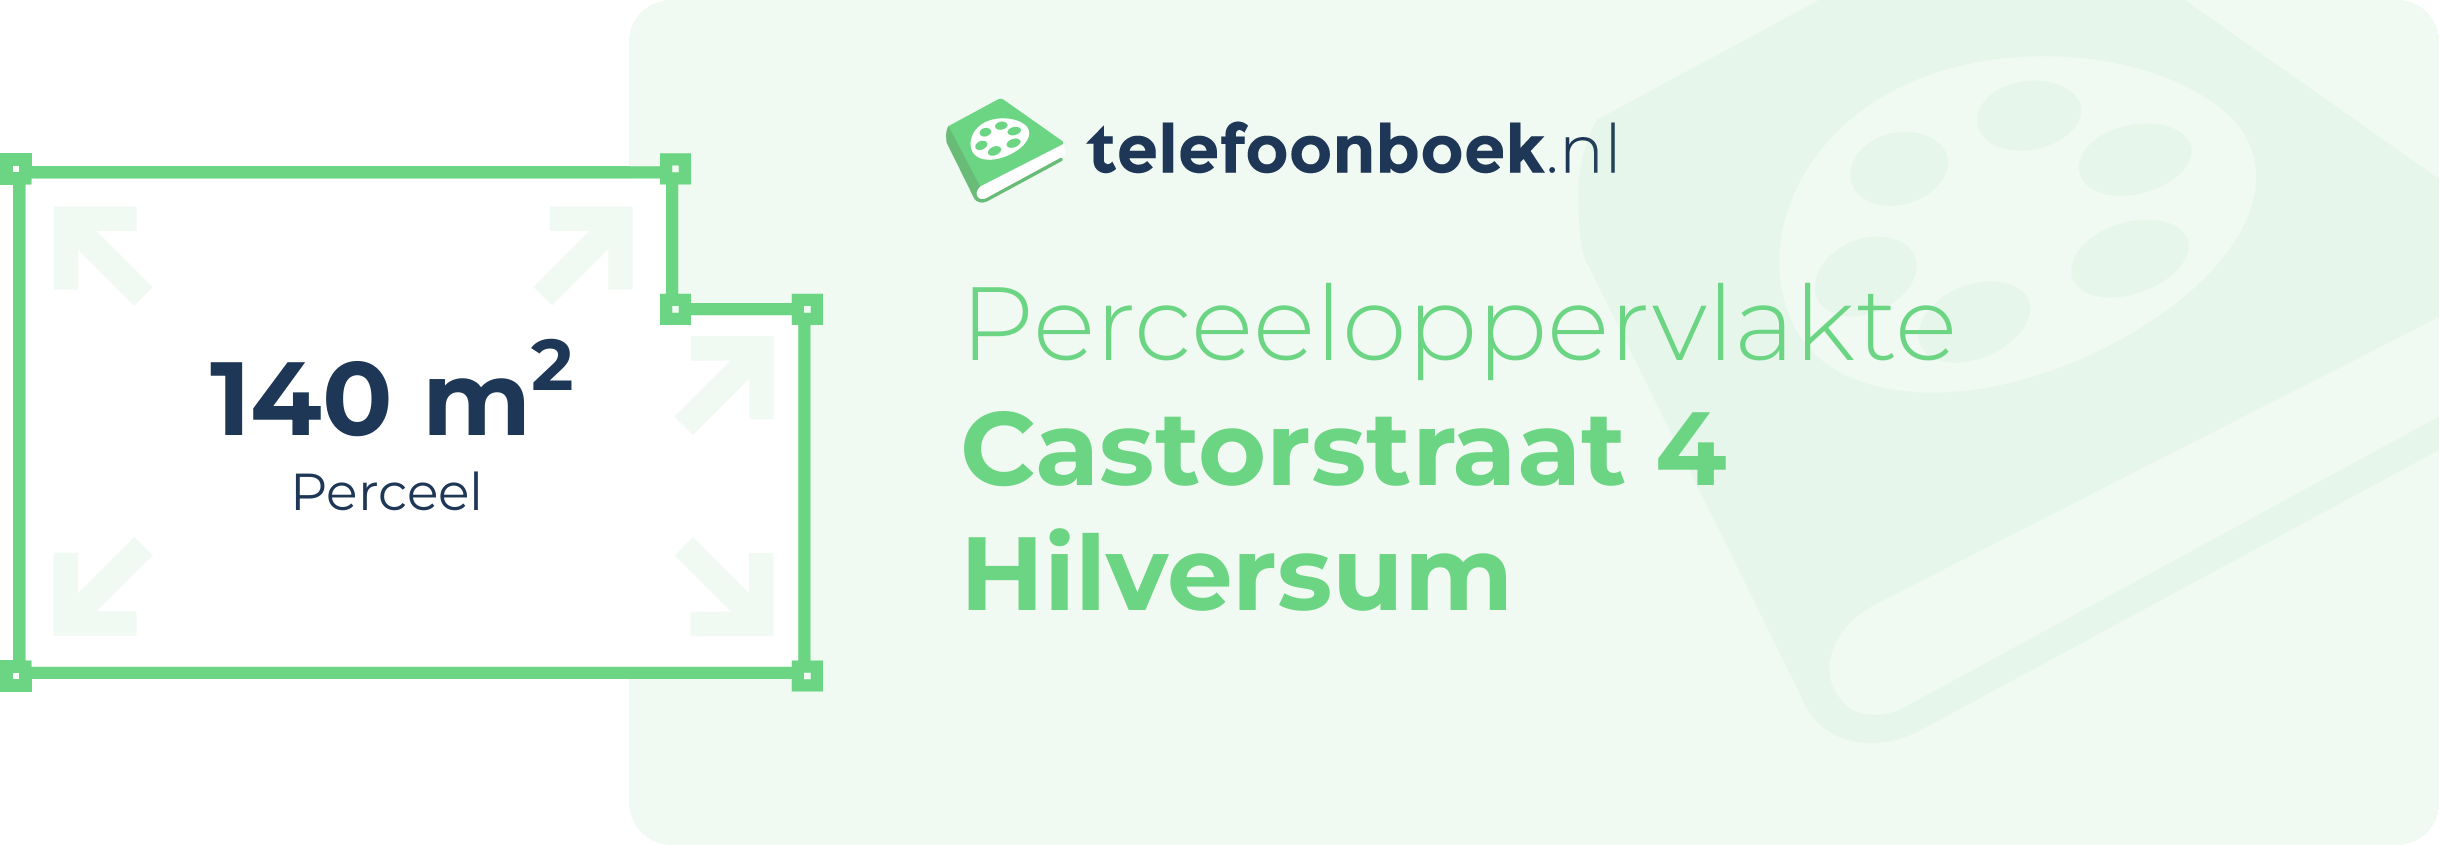 Perceeloppervlakte Castorstraat 4 Hilversum